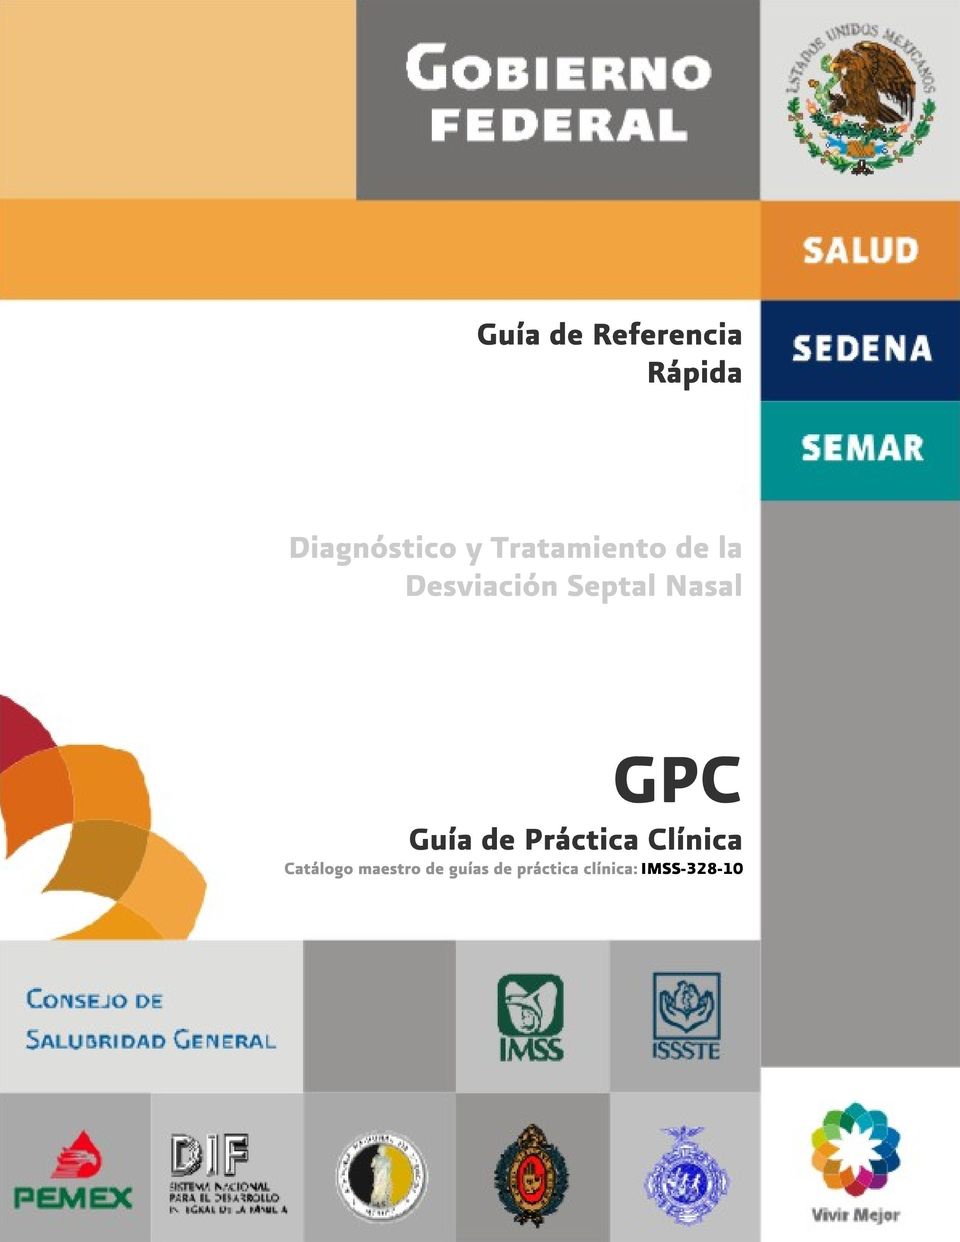 GPC Guía de Práctica Clínica Catálogo